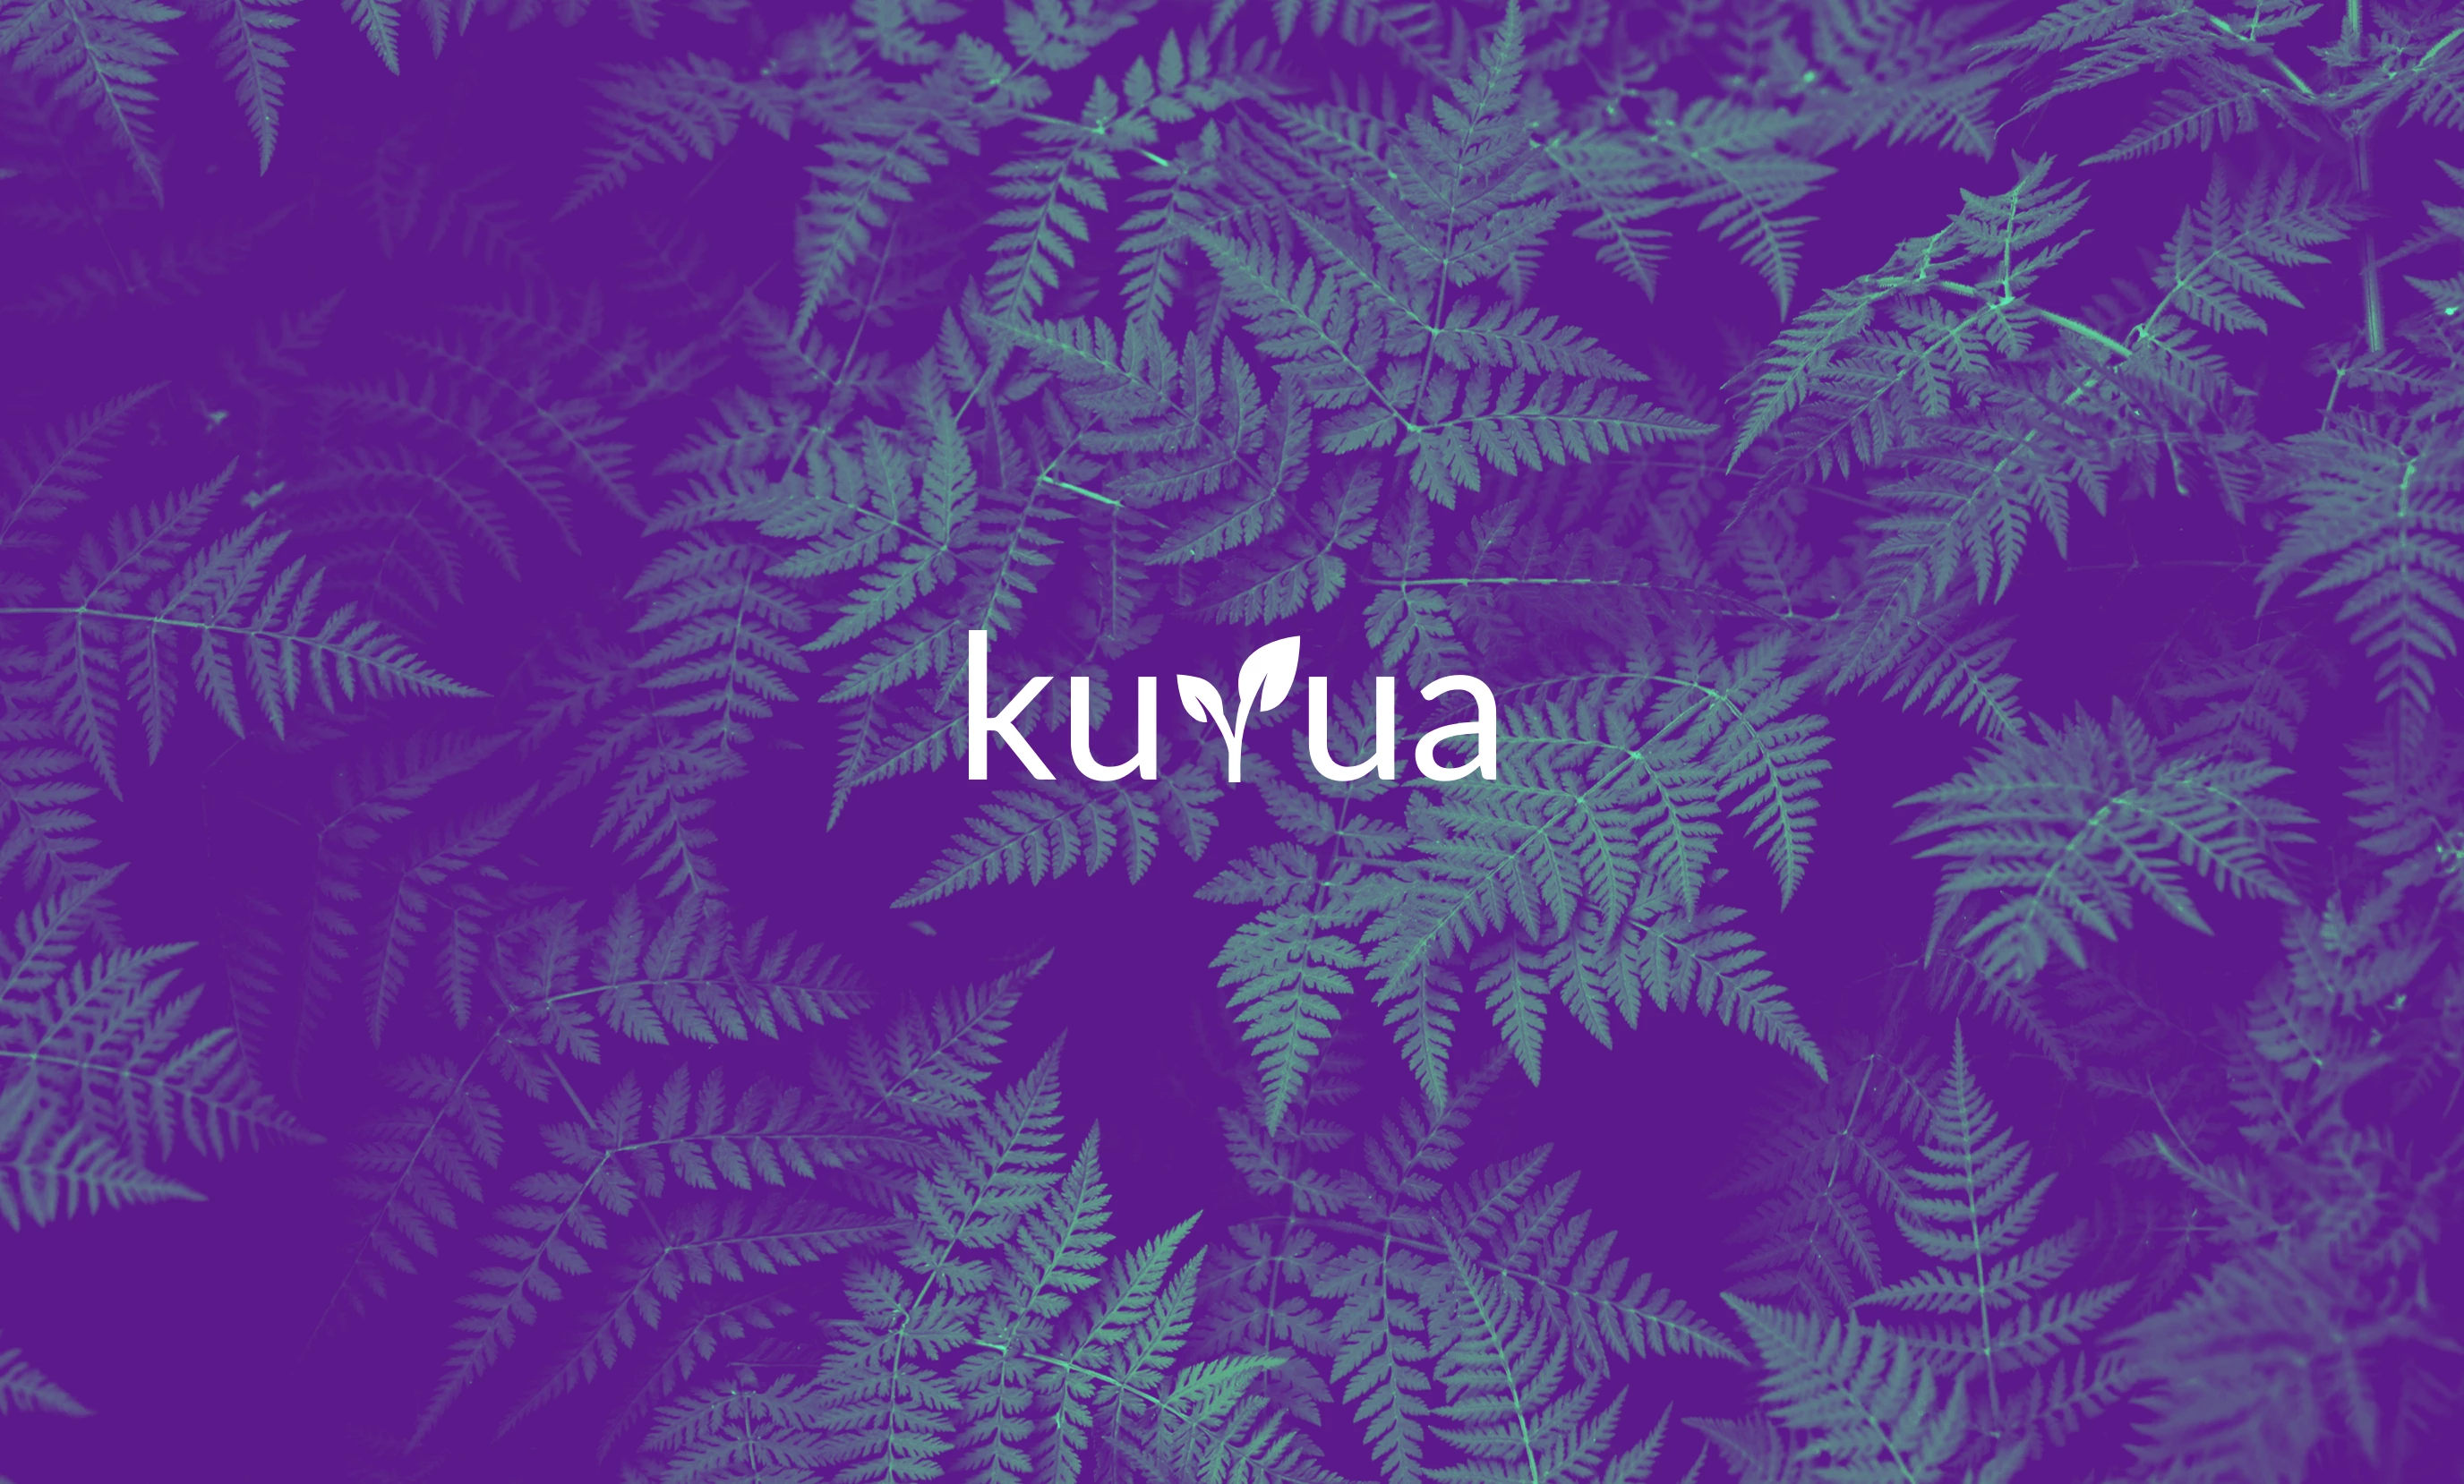 Kuyua-Logo vor Farn-Hintergrund